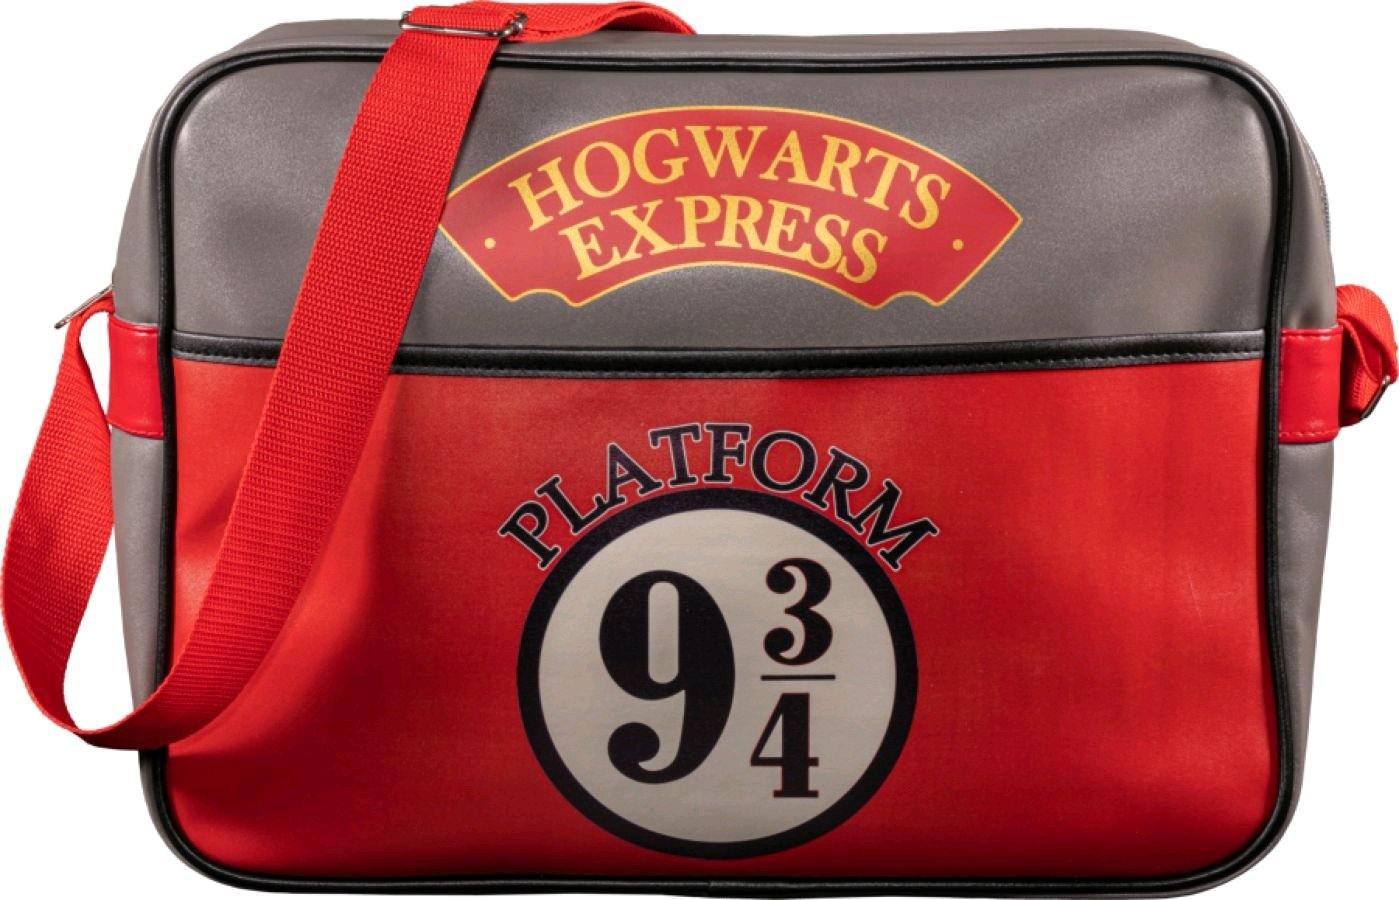 IKO1718 Harry Potter - Platform 9 3/4 Hogwarts Express Messenger Bag - Ikon Collectables - Titan Pop Culture